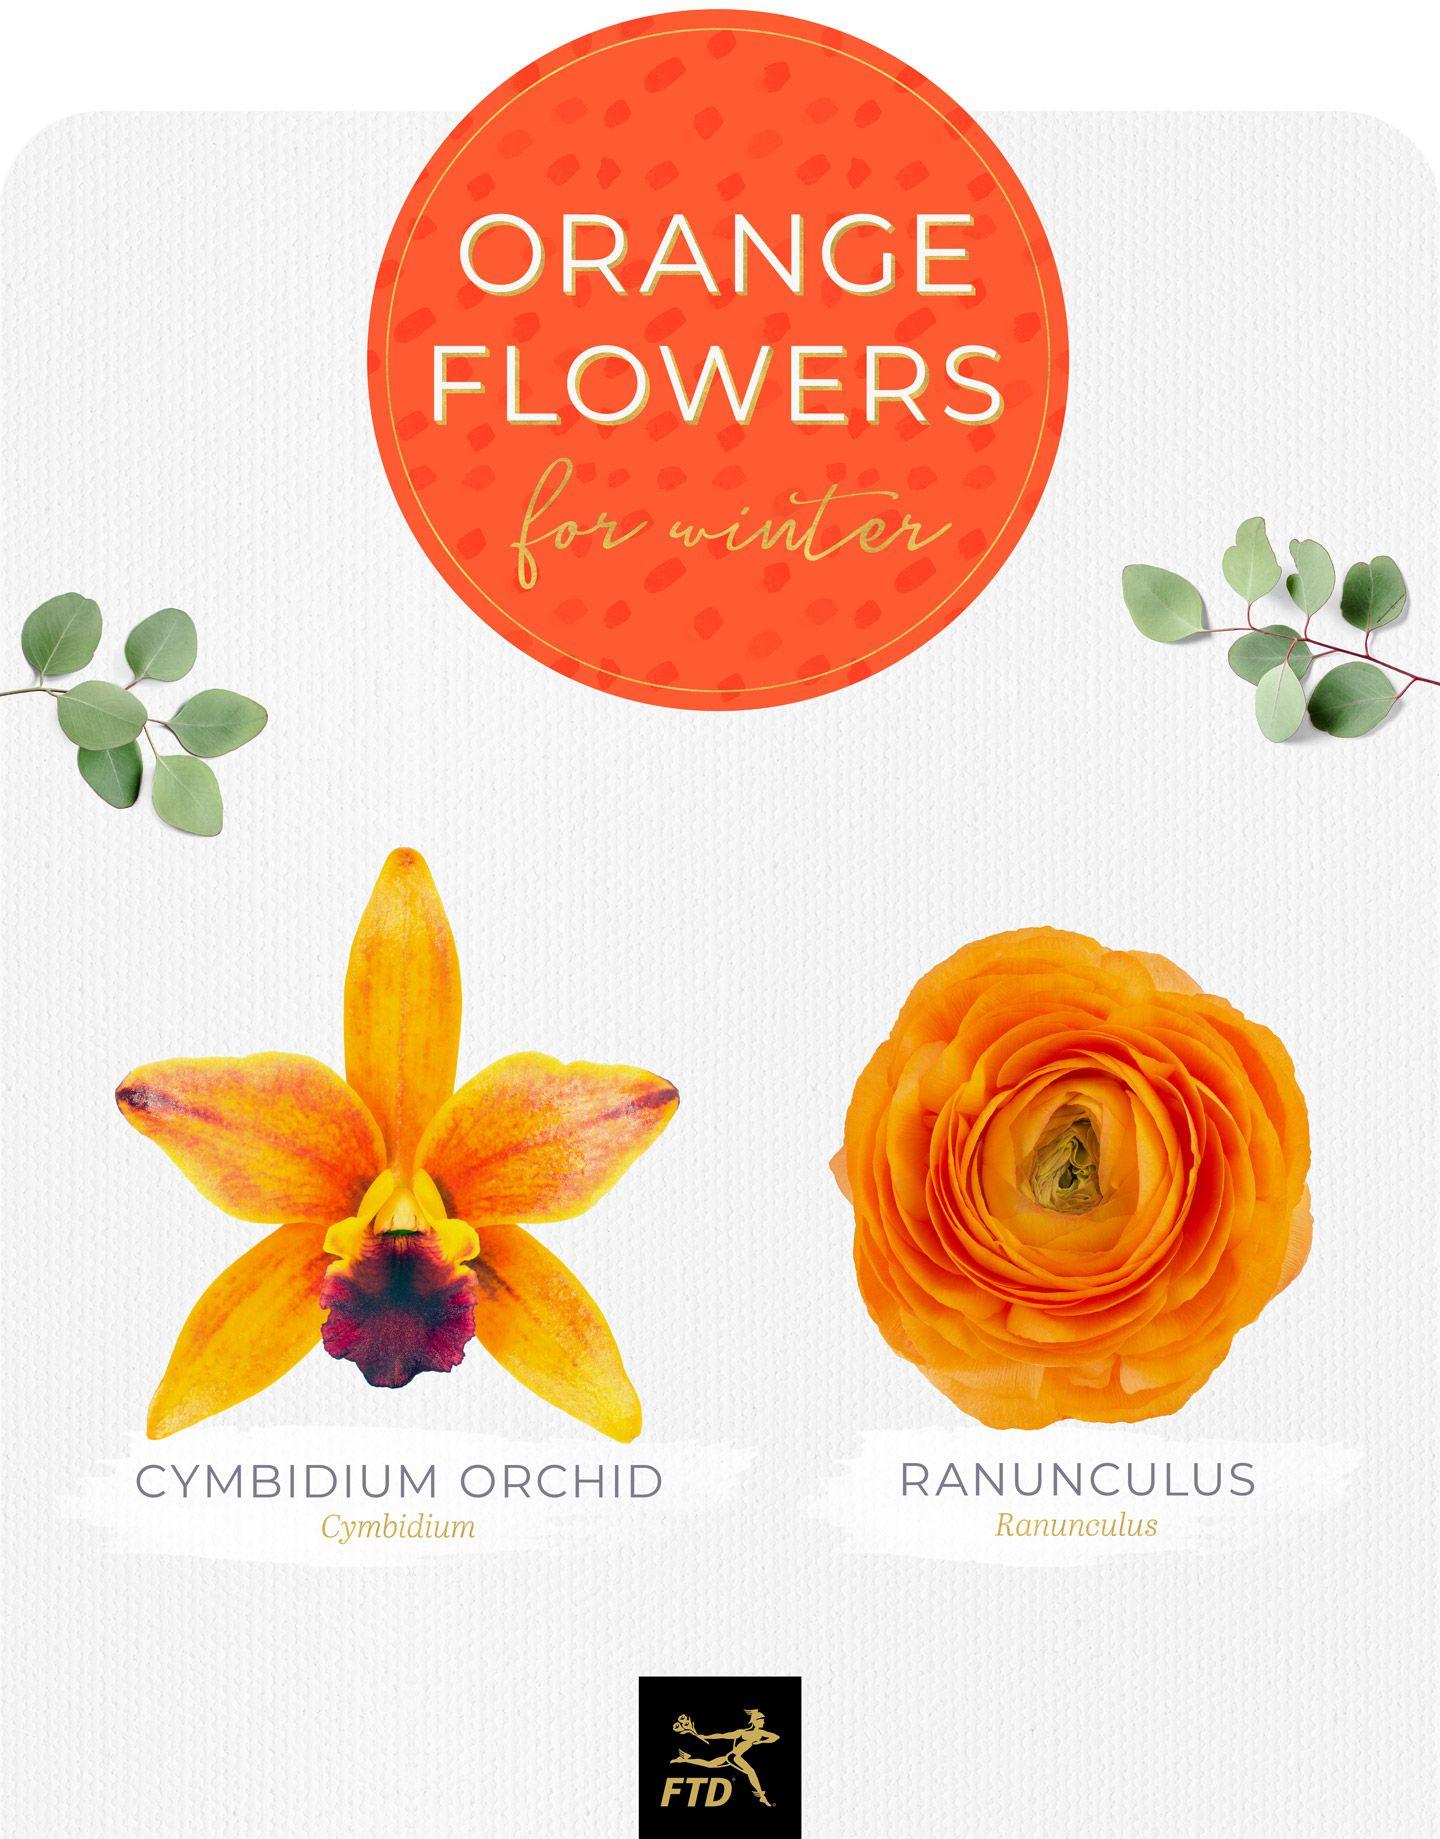 FTD.com Logo - 20 Types of Orange Flowers - FTD.com